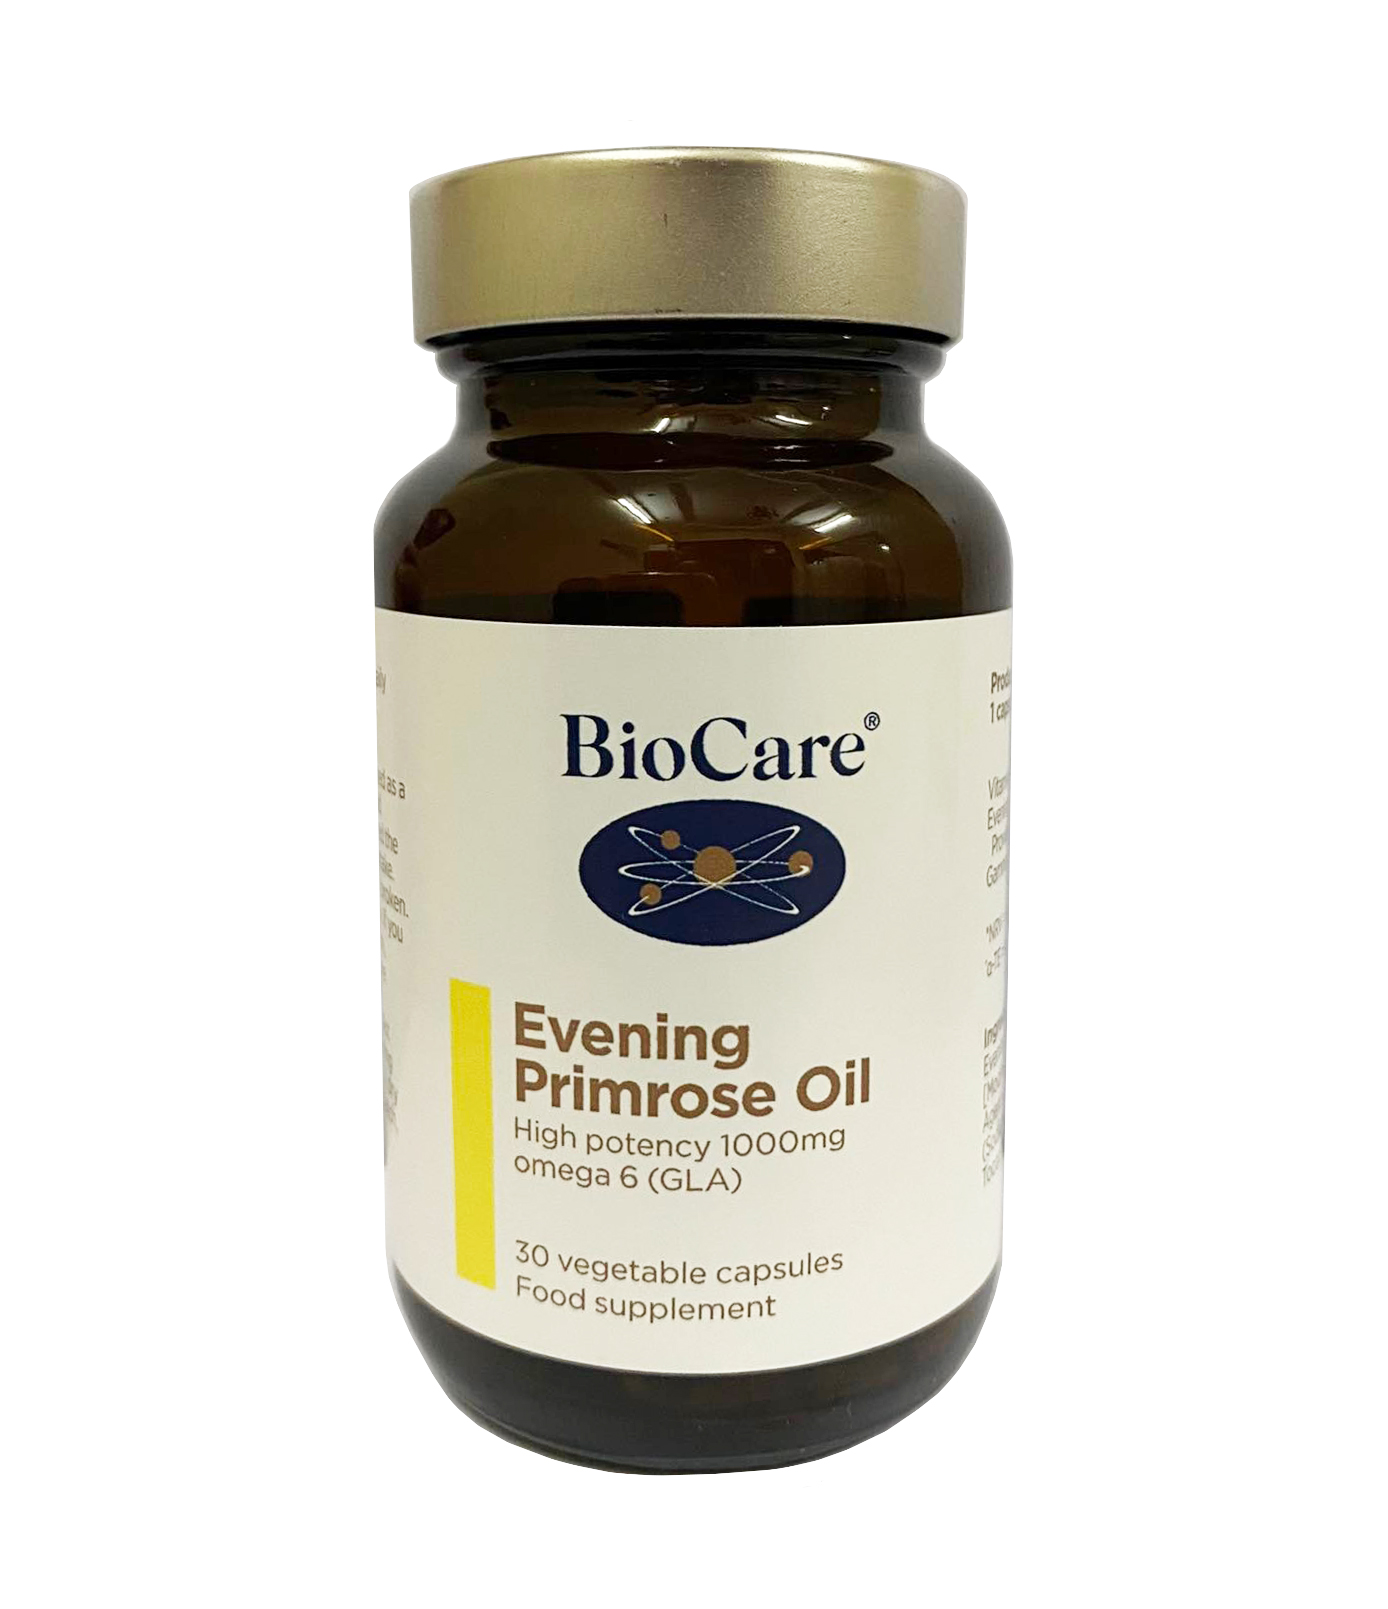 Bạn nên uống Biocare Evening Primrose Oil vào thời điểm nào trong ngày để đạt hiệu quả tối ưu?